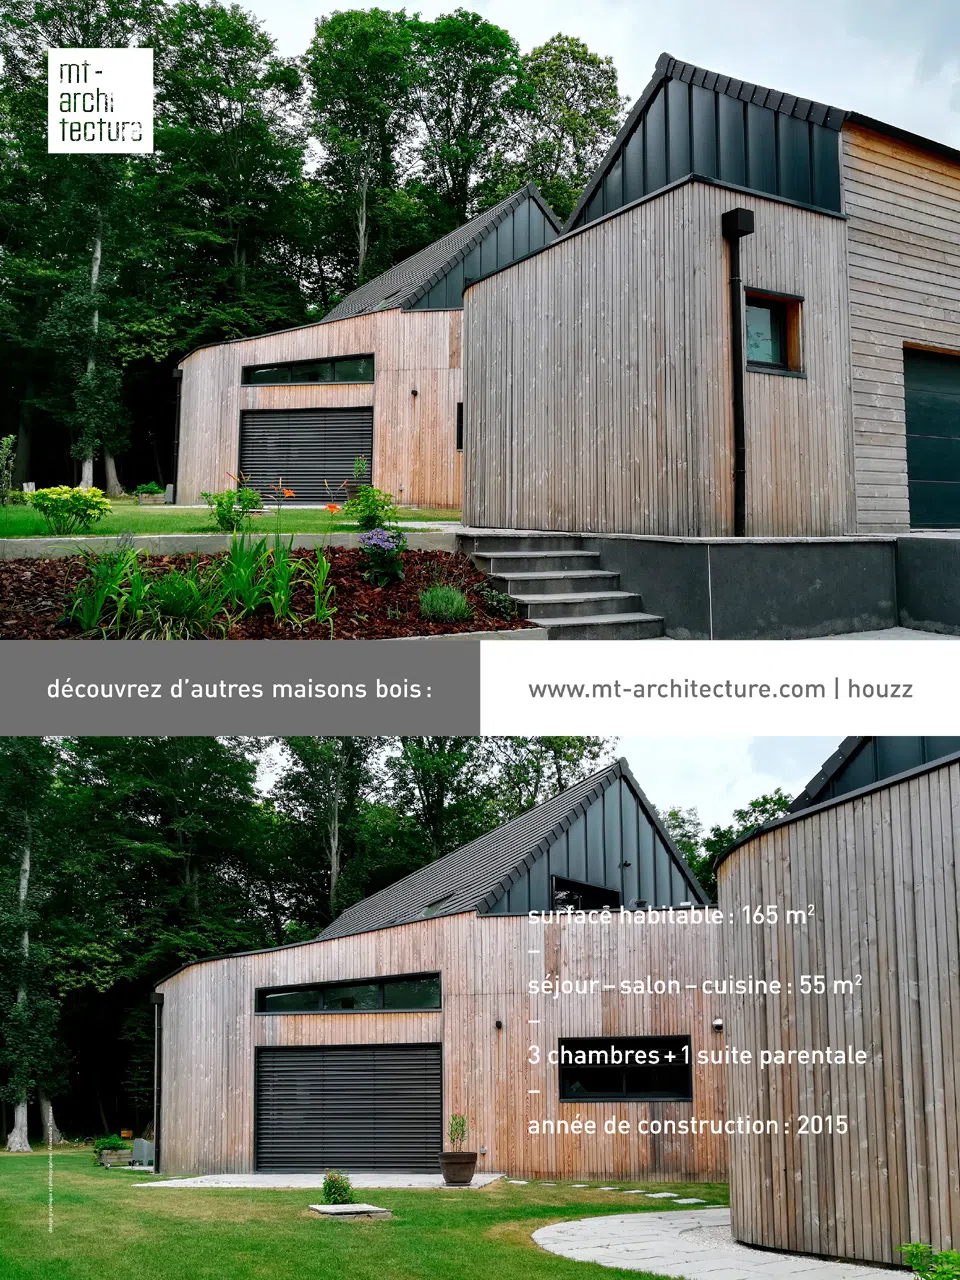 Affiche au format 600 x 800 mm portrait, présentant une maison en bois de 165 m2 créée par l’atelier MT-Architecture.